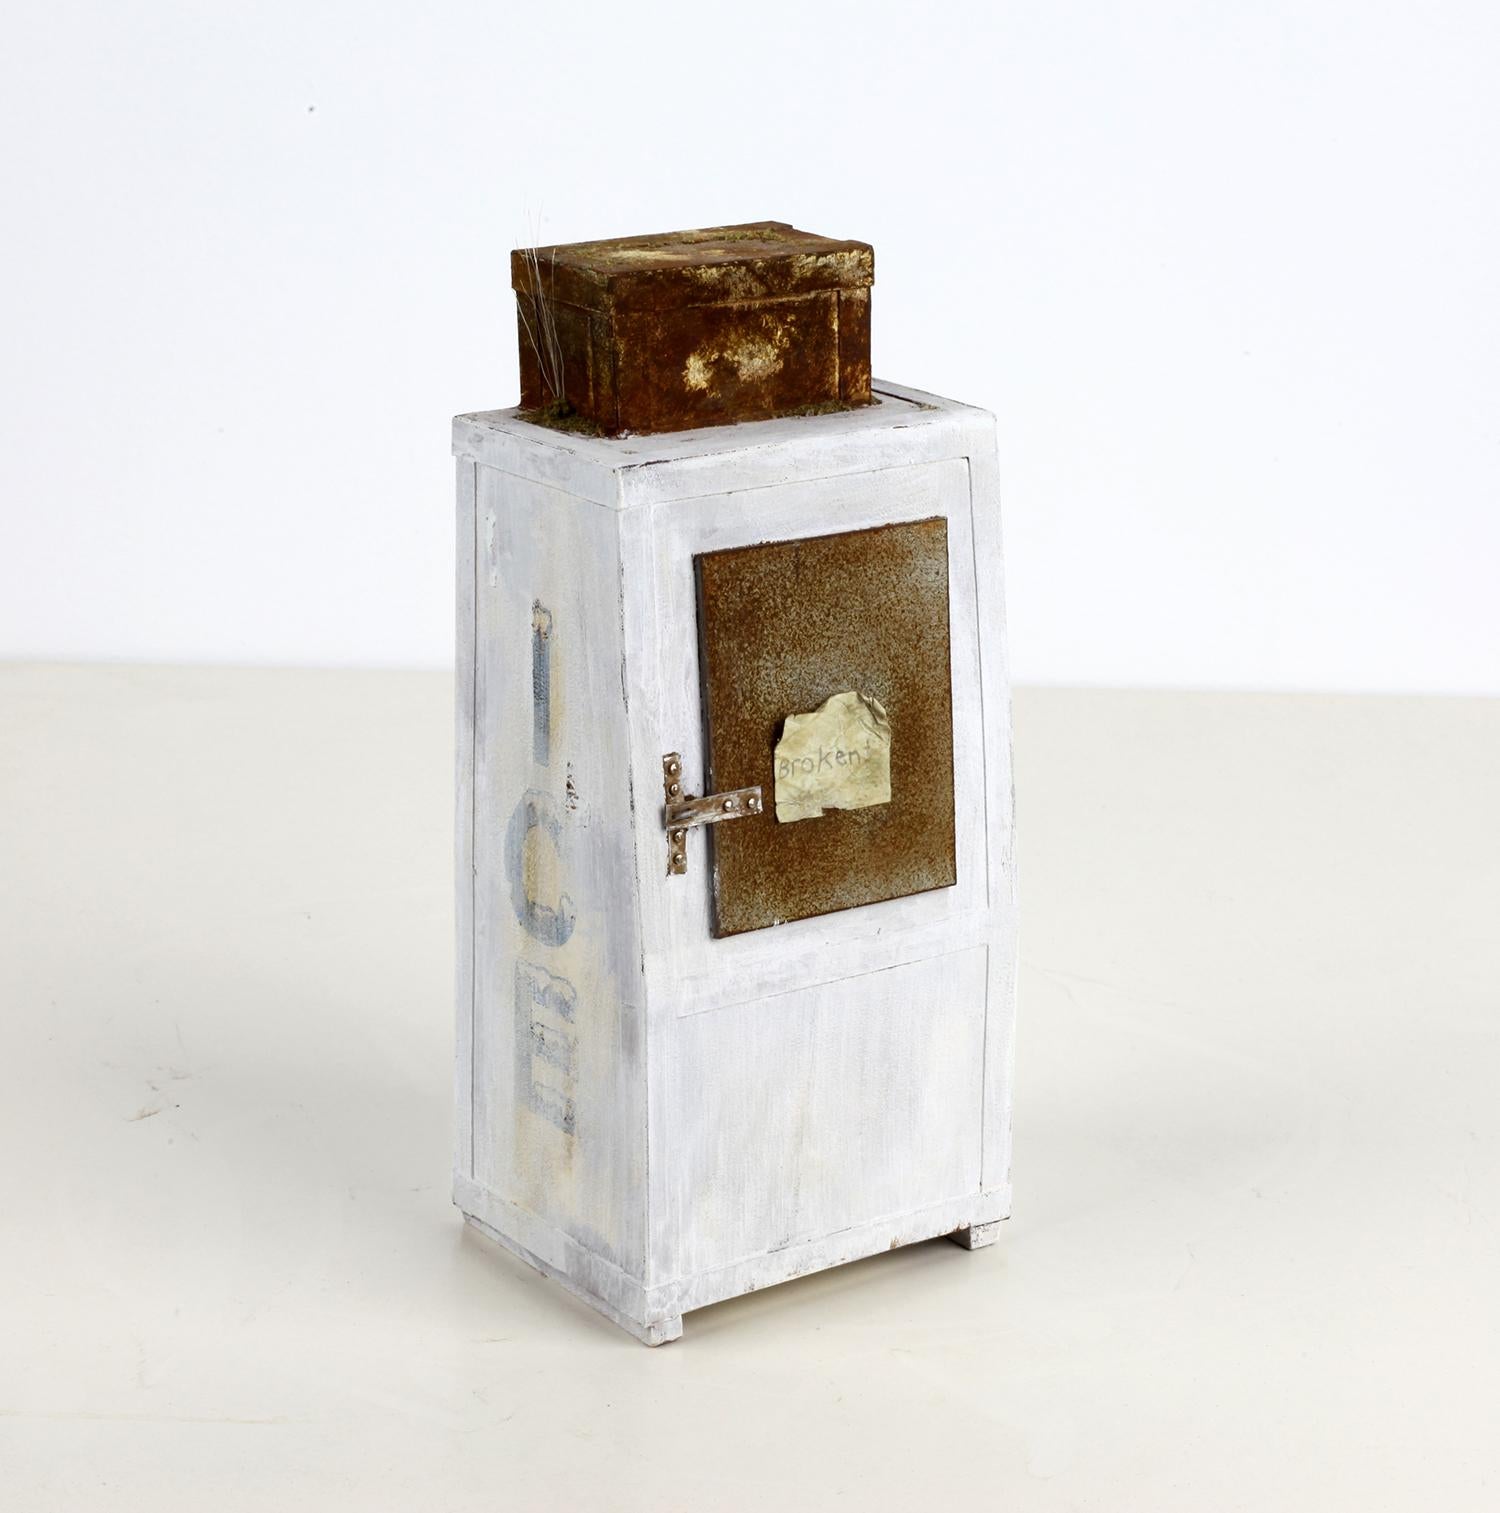 Drew Leshko Still-Life Sculpture - Broken Ice Box